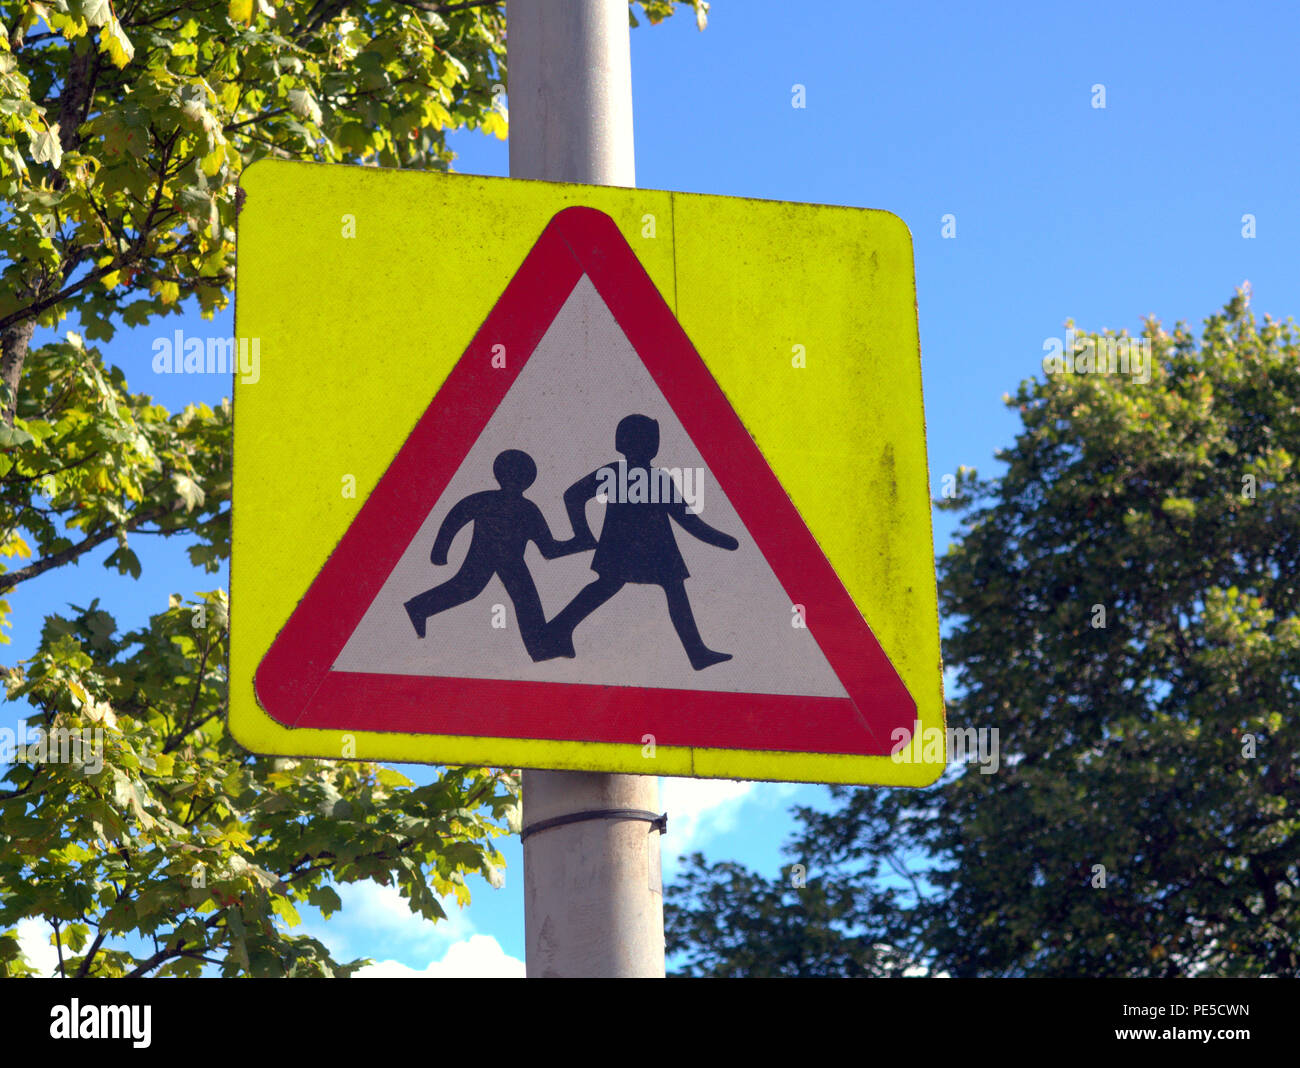 Señal de carretera británica escolares los niños crossing road signo de advertencia de cielo azul Foto de stock